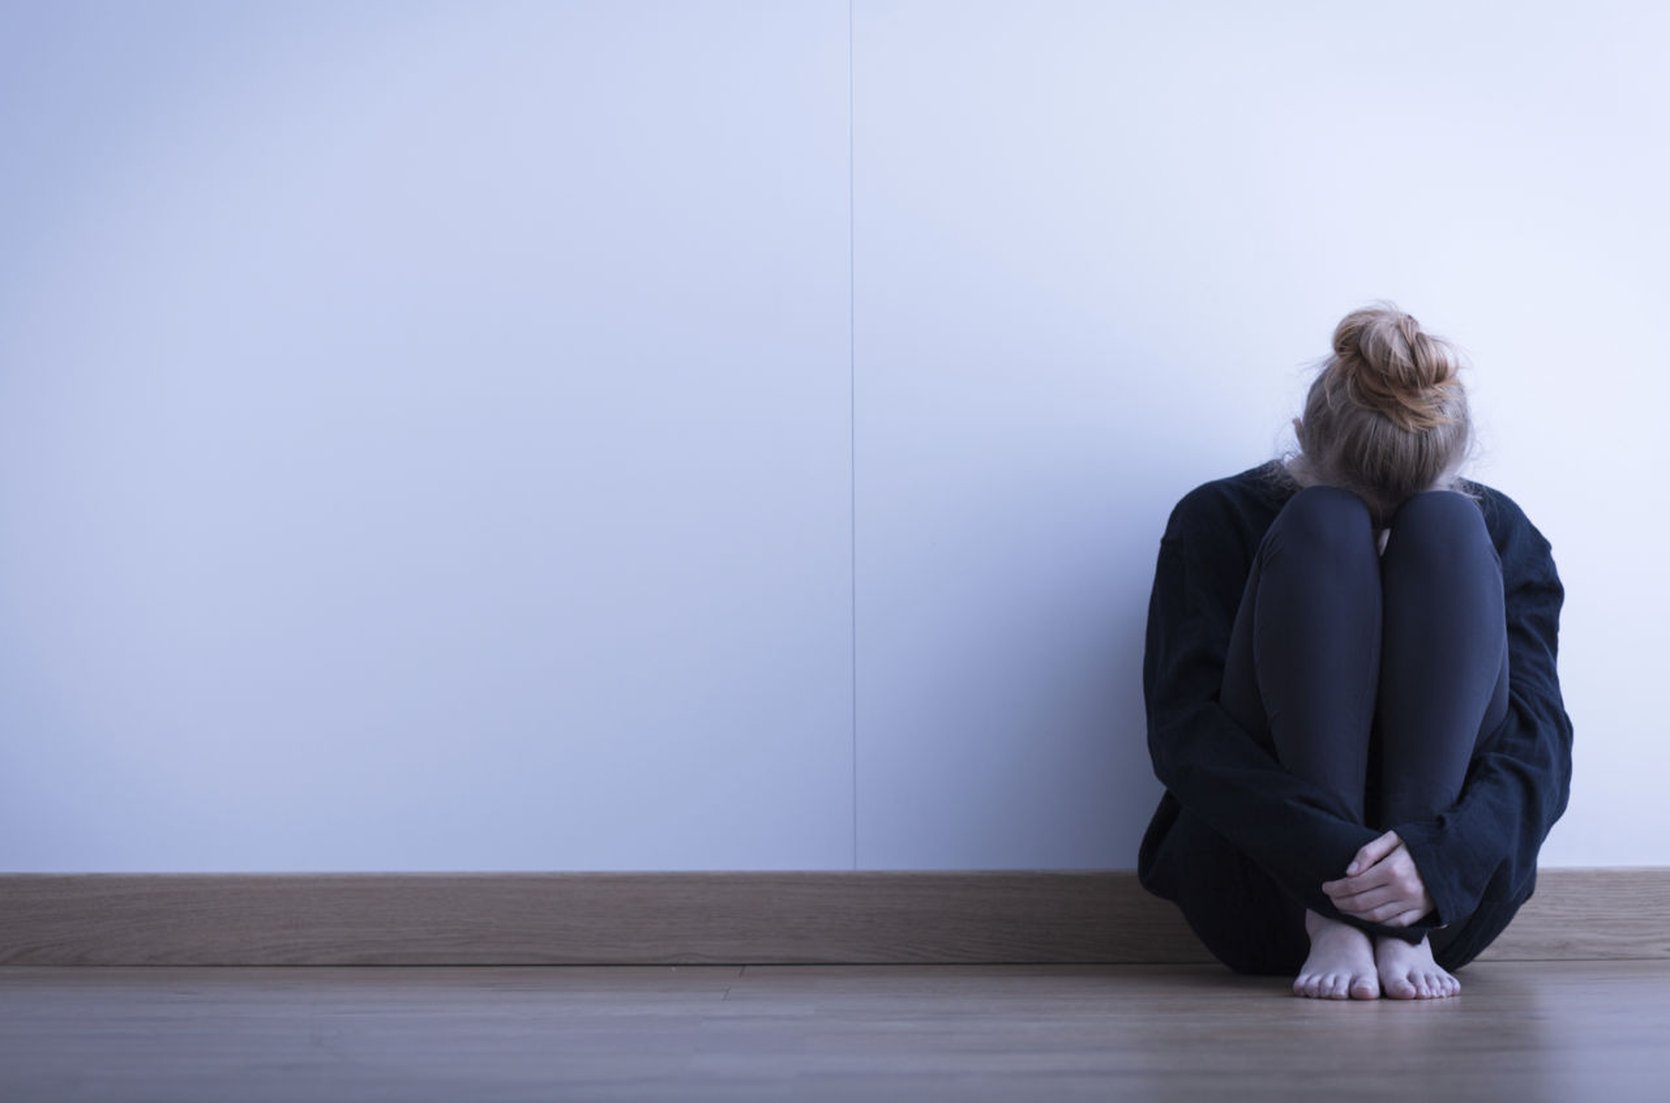 Generieke module beschrijft goede zorg bij suïcidaal gedrag